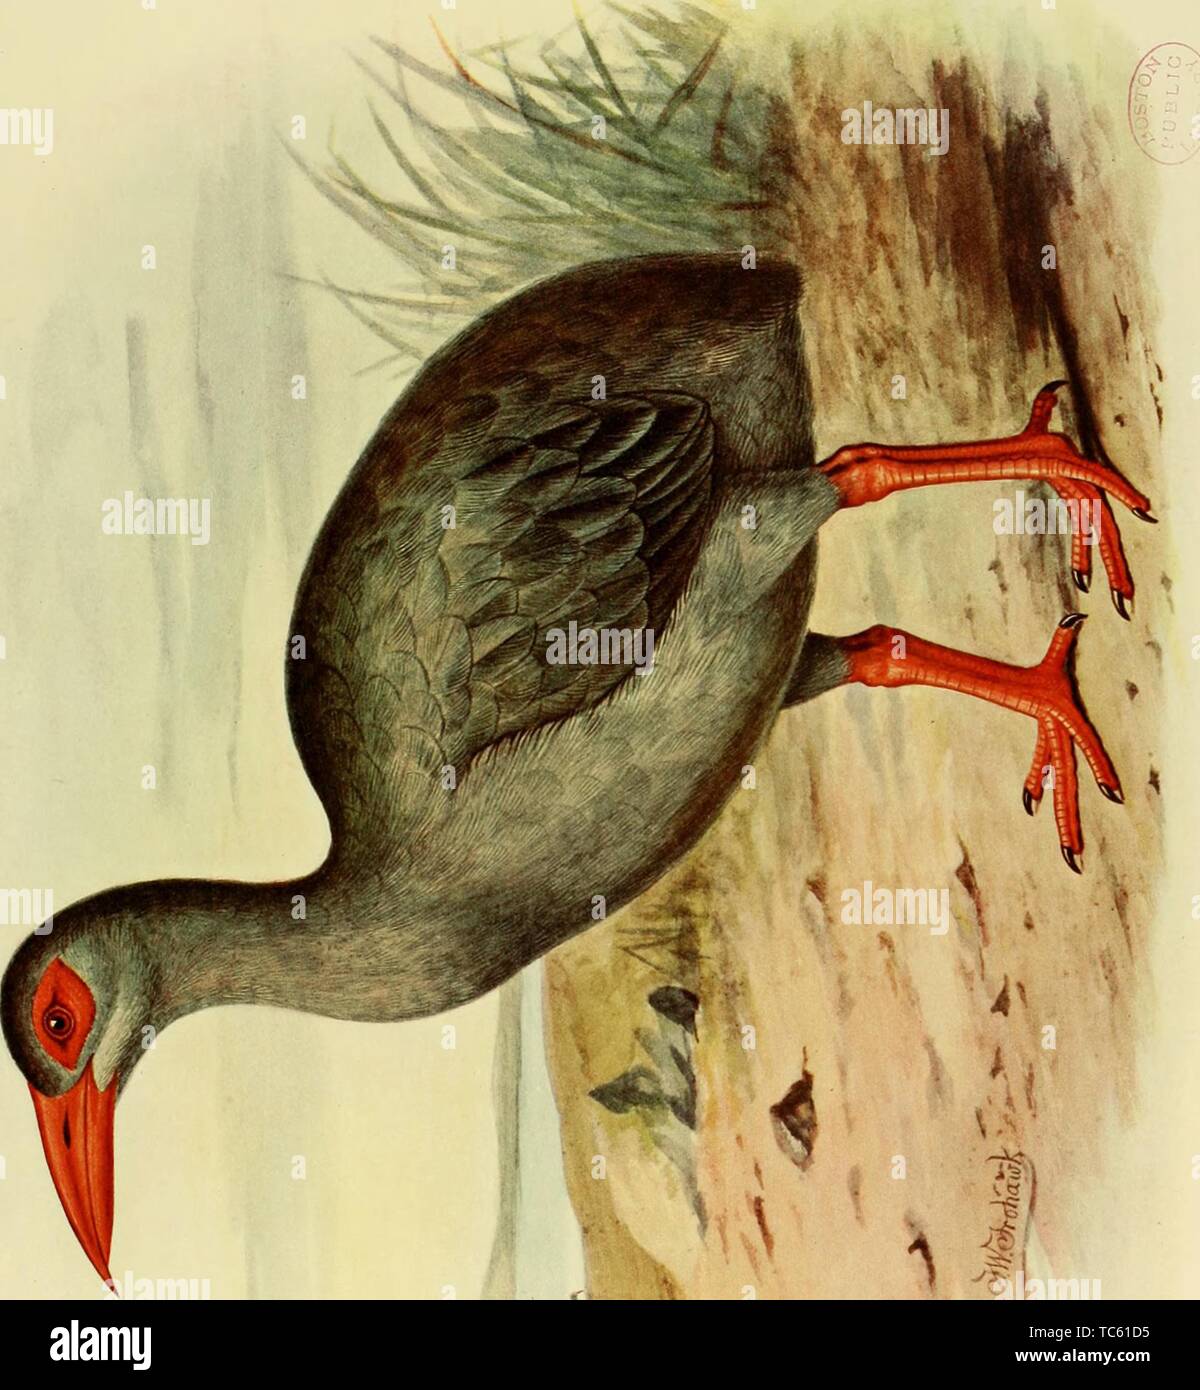 Gravur der Erythromachus Leguati, aus dem Buch "Ausgestorbenen Vögel' von Lionel Walter Rothschild, 1907. Mit freundlicher Genehmigung Internet Archive. () Stockfoto